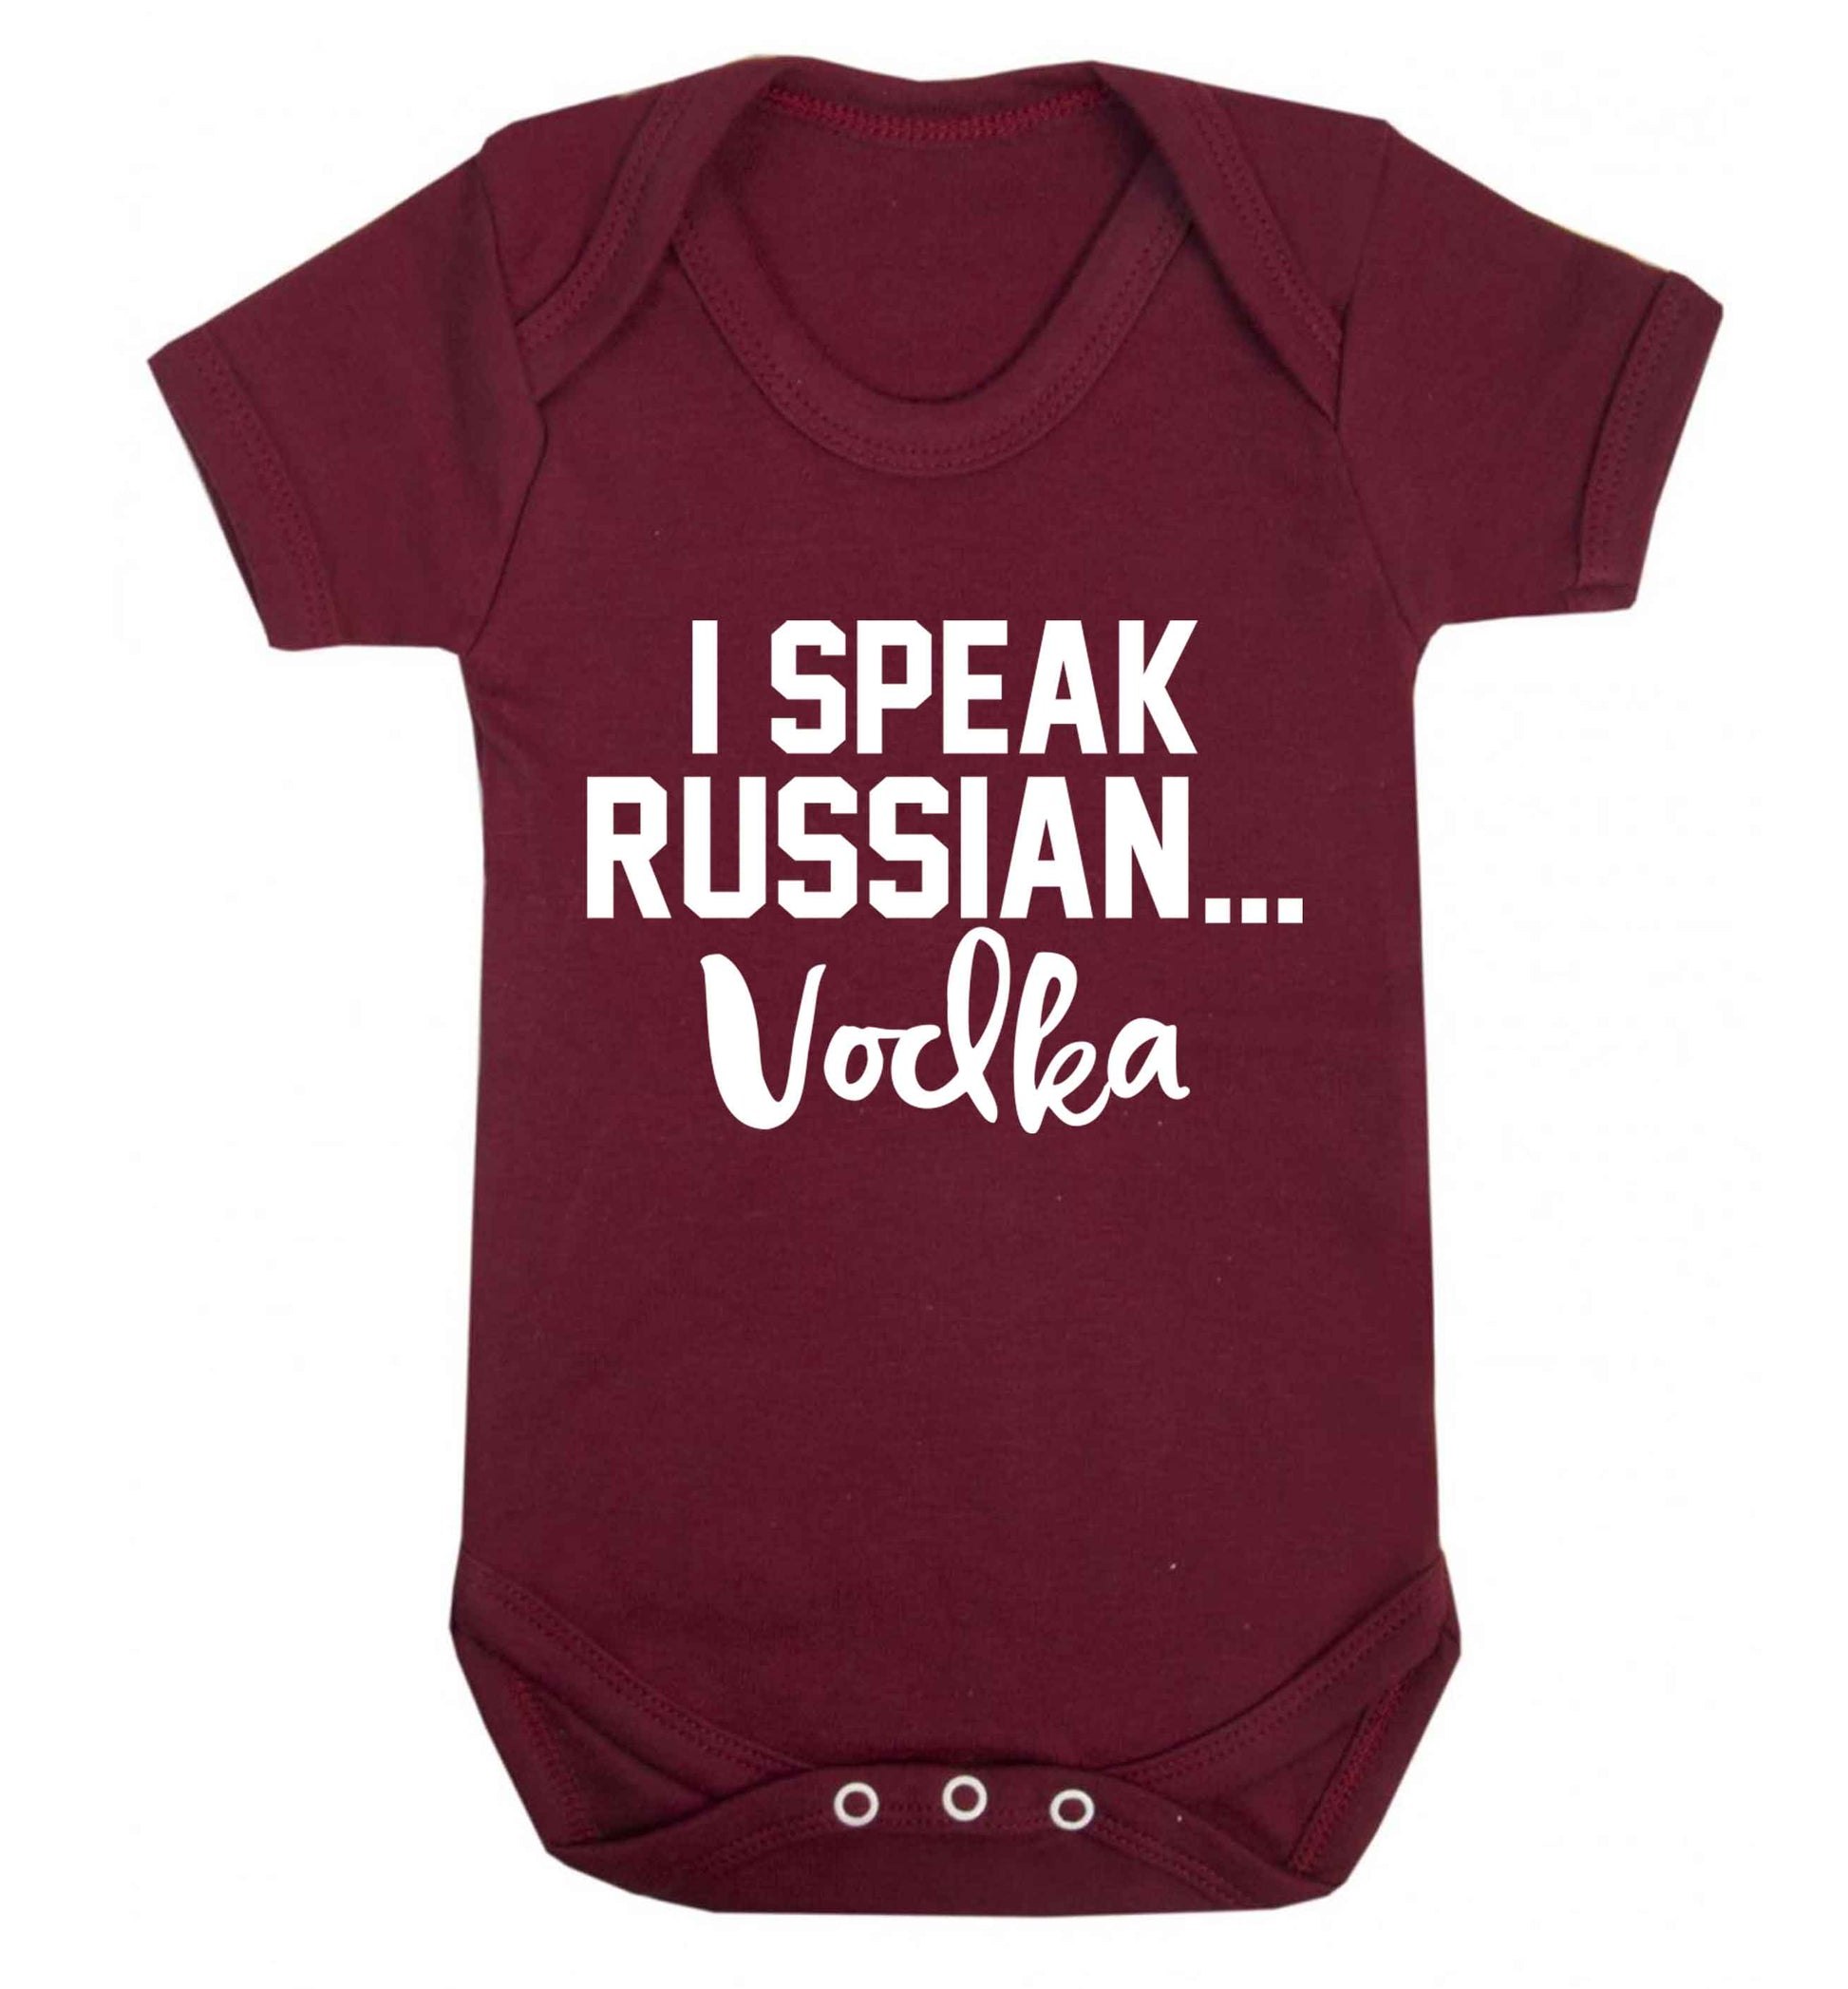 I speak russian...vodka Baby Vest maroon 18-24 months